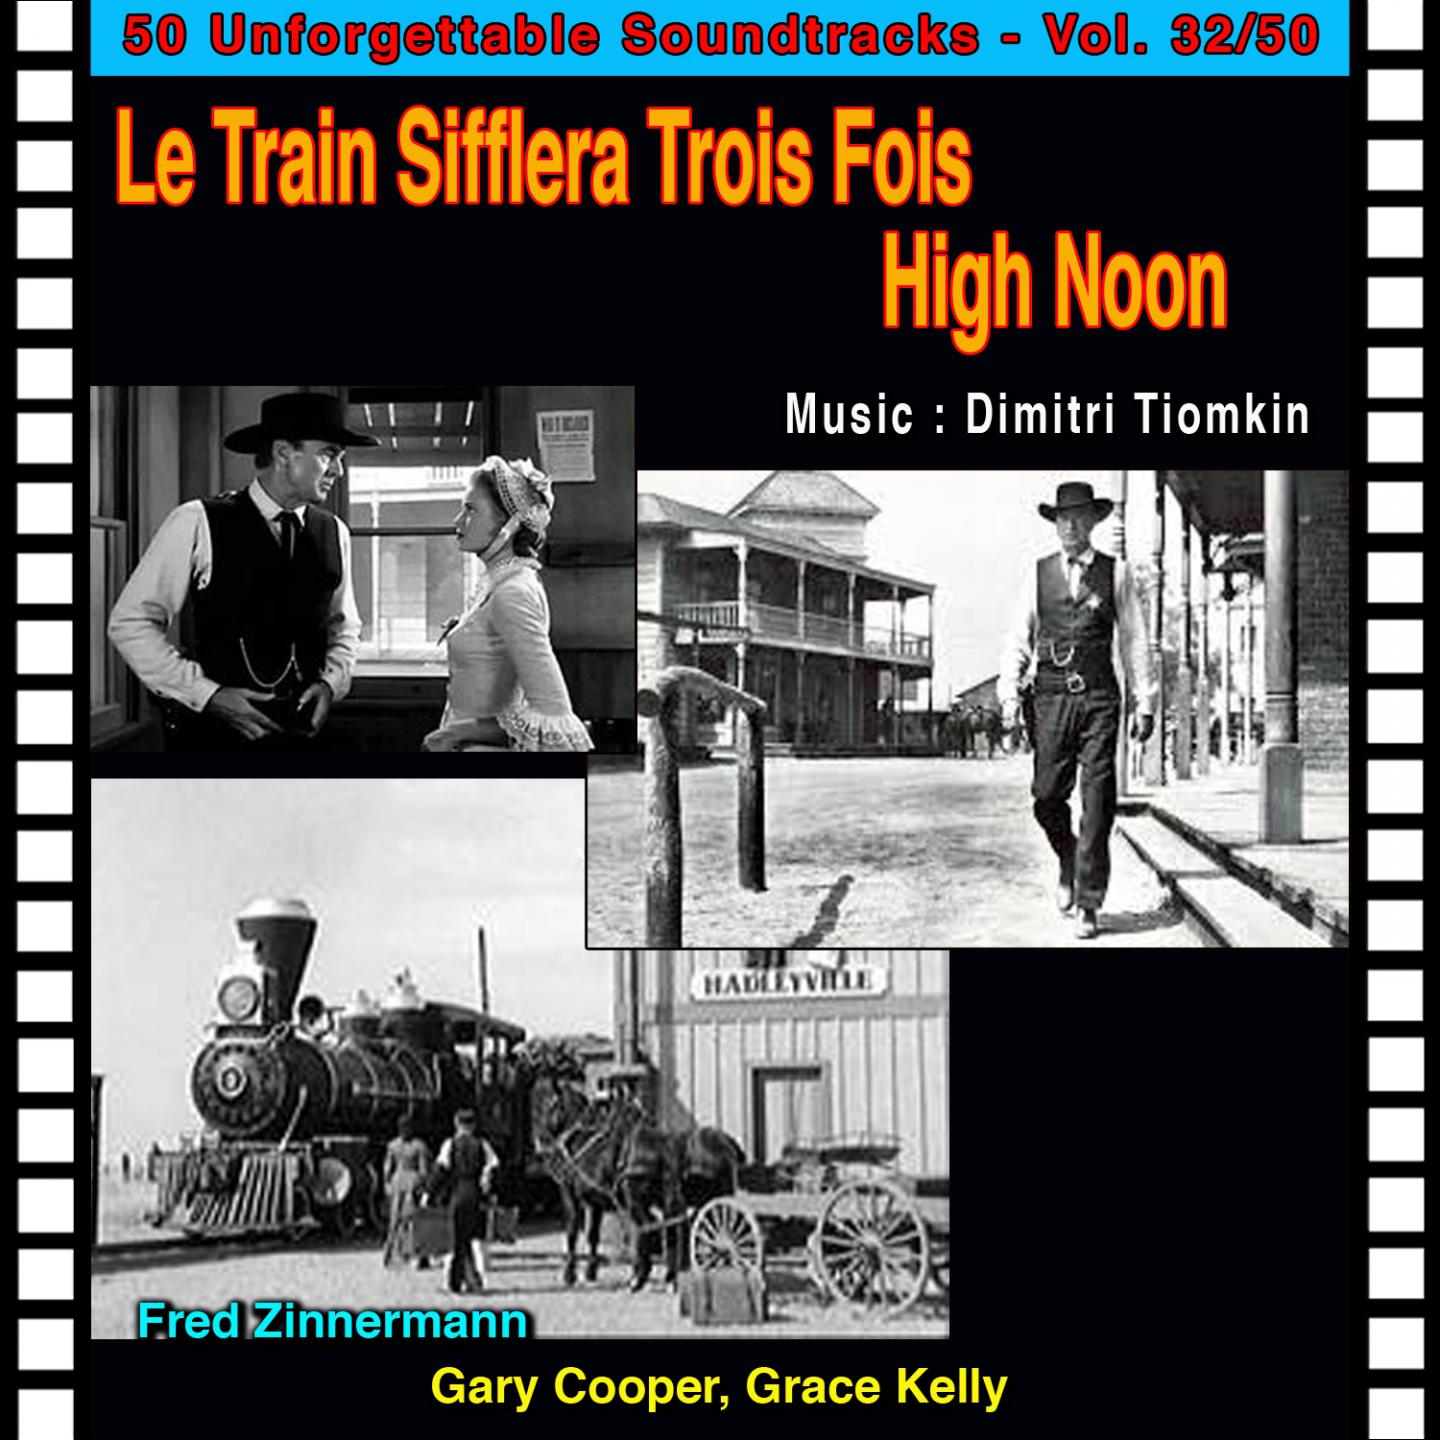 High Noon (Le Train Sifflera Trois Fois - High Noon)